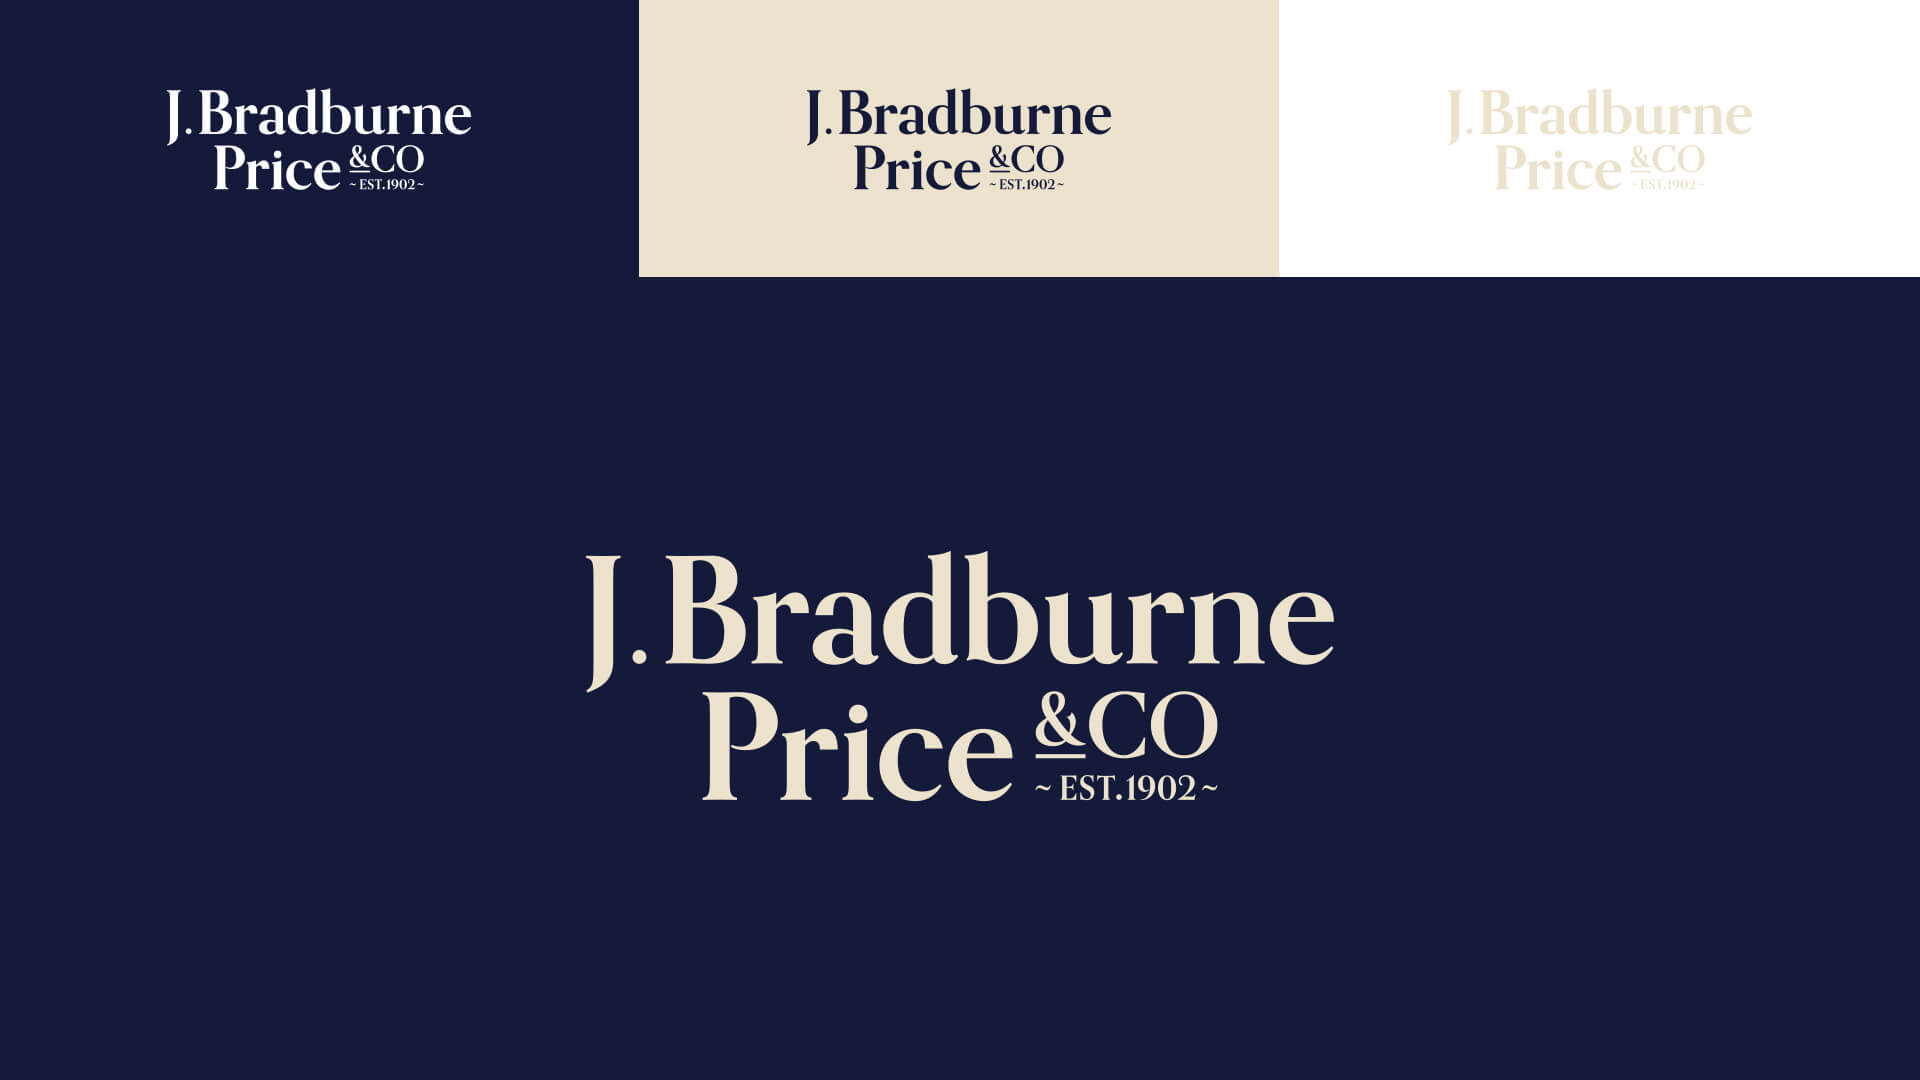 J Bradburne Price & Co Branding Logo Design